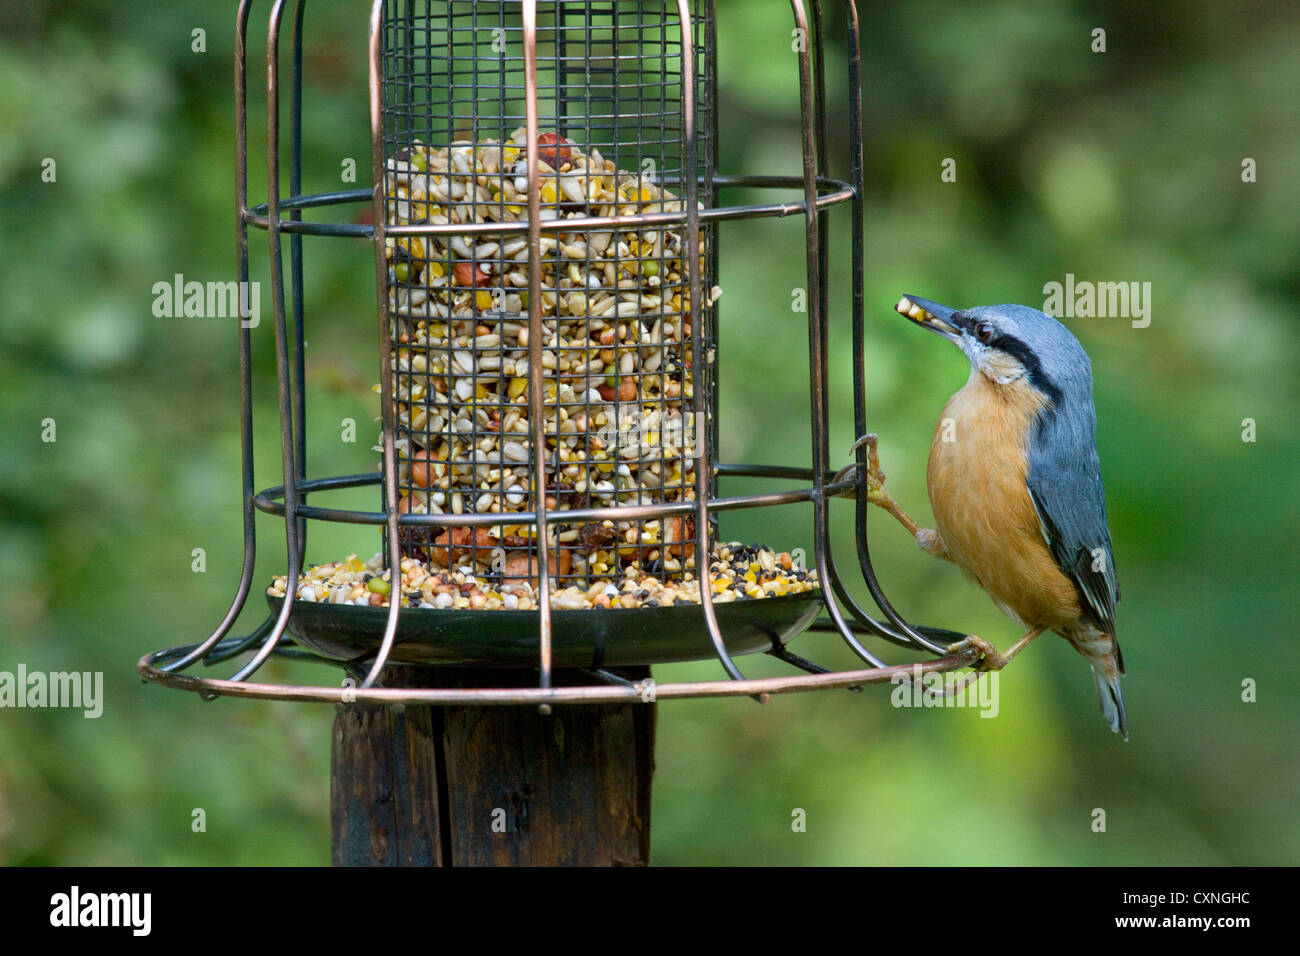 Trepador euroasiático (distritos de Sitta europaea) comer del comedero para pájaros en el jardín Foto de stock